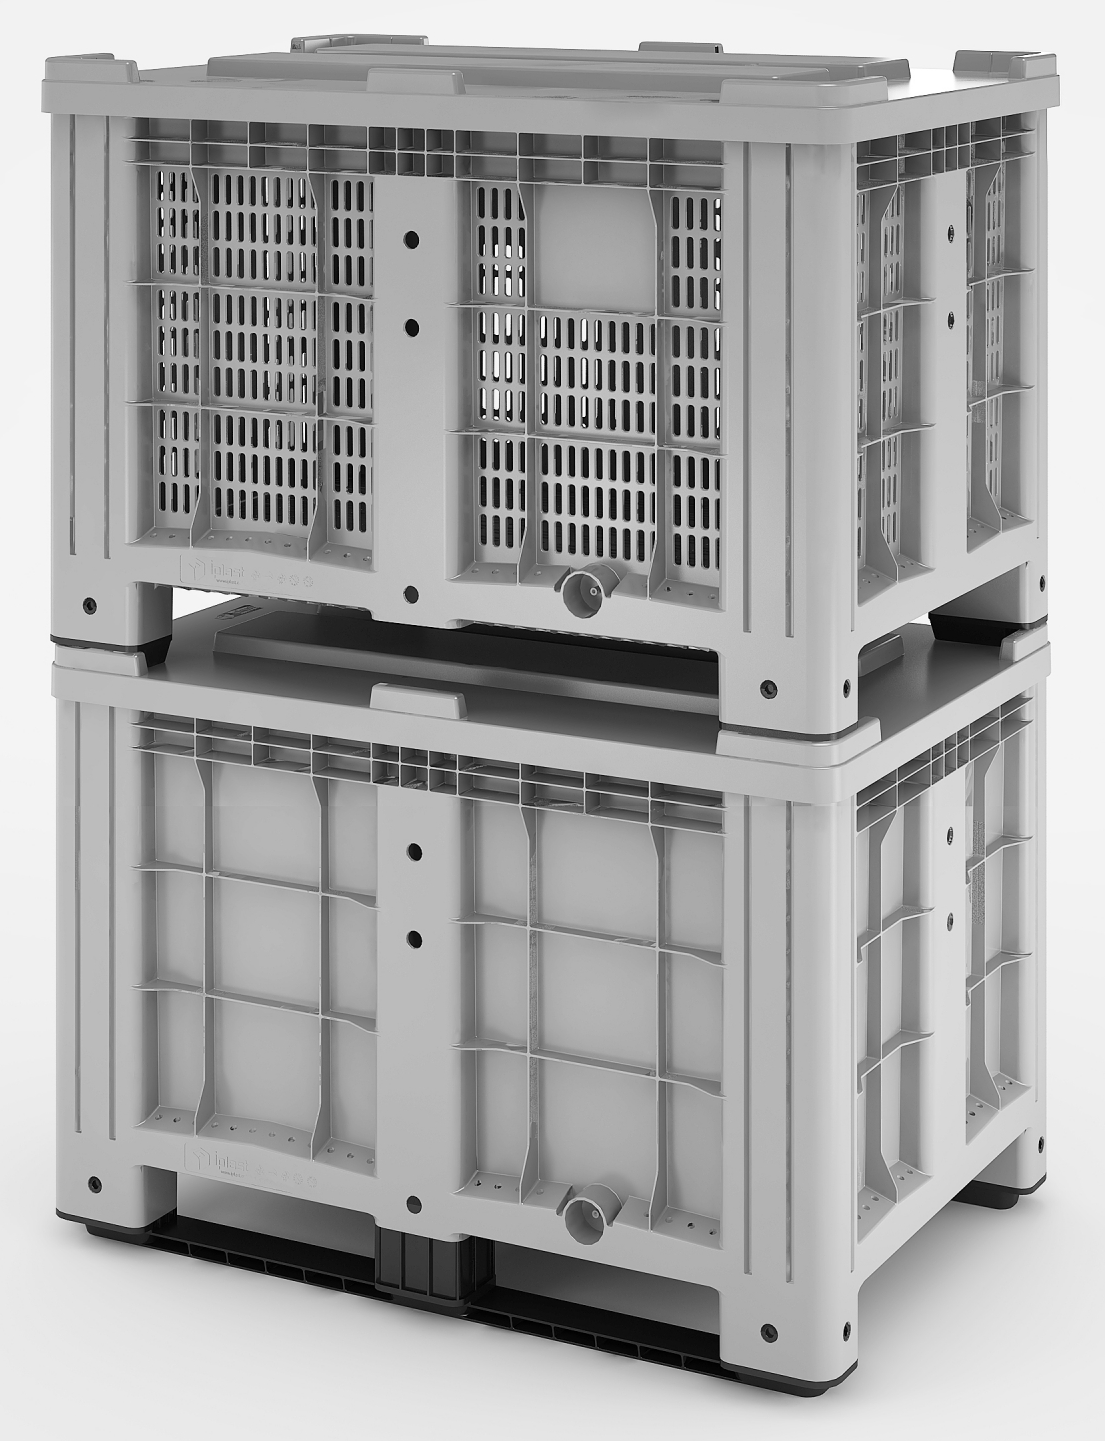 11.602.91.PE.C9 Пластиковый контейнер iBox 1200х800 (перфорированный, на полозьях) г. Ижевск TARA-RU.RU (3412) 57-67-95